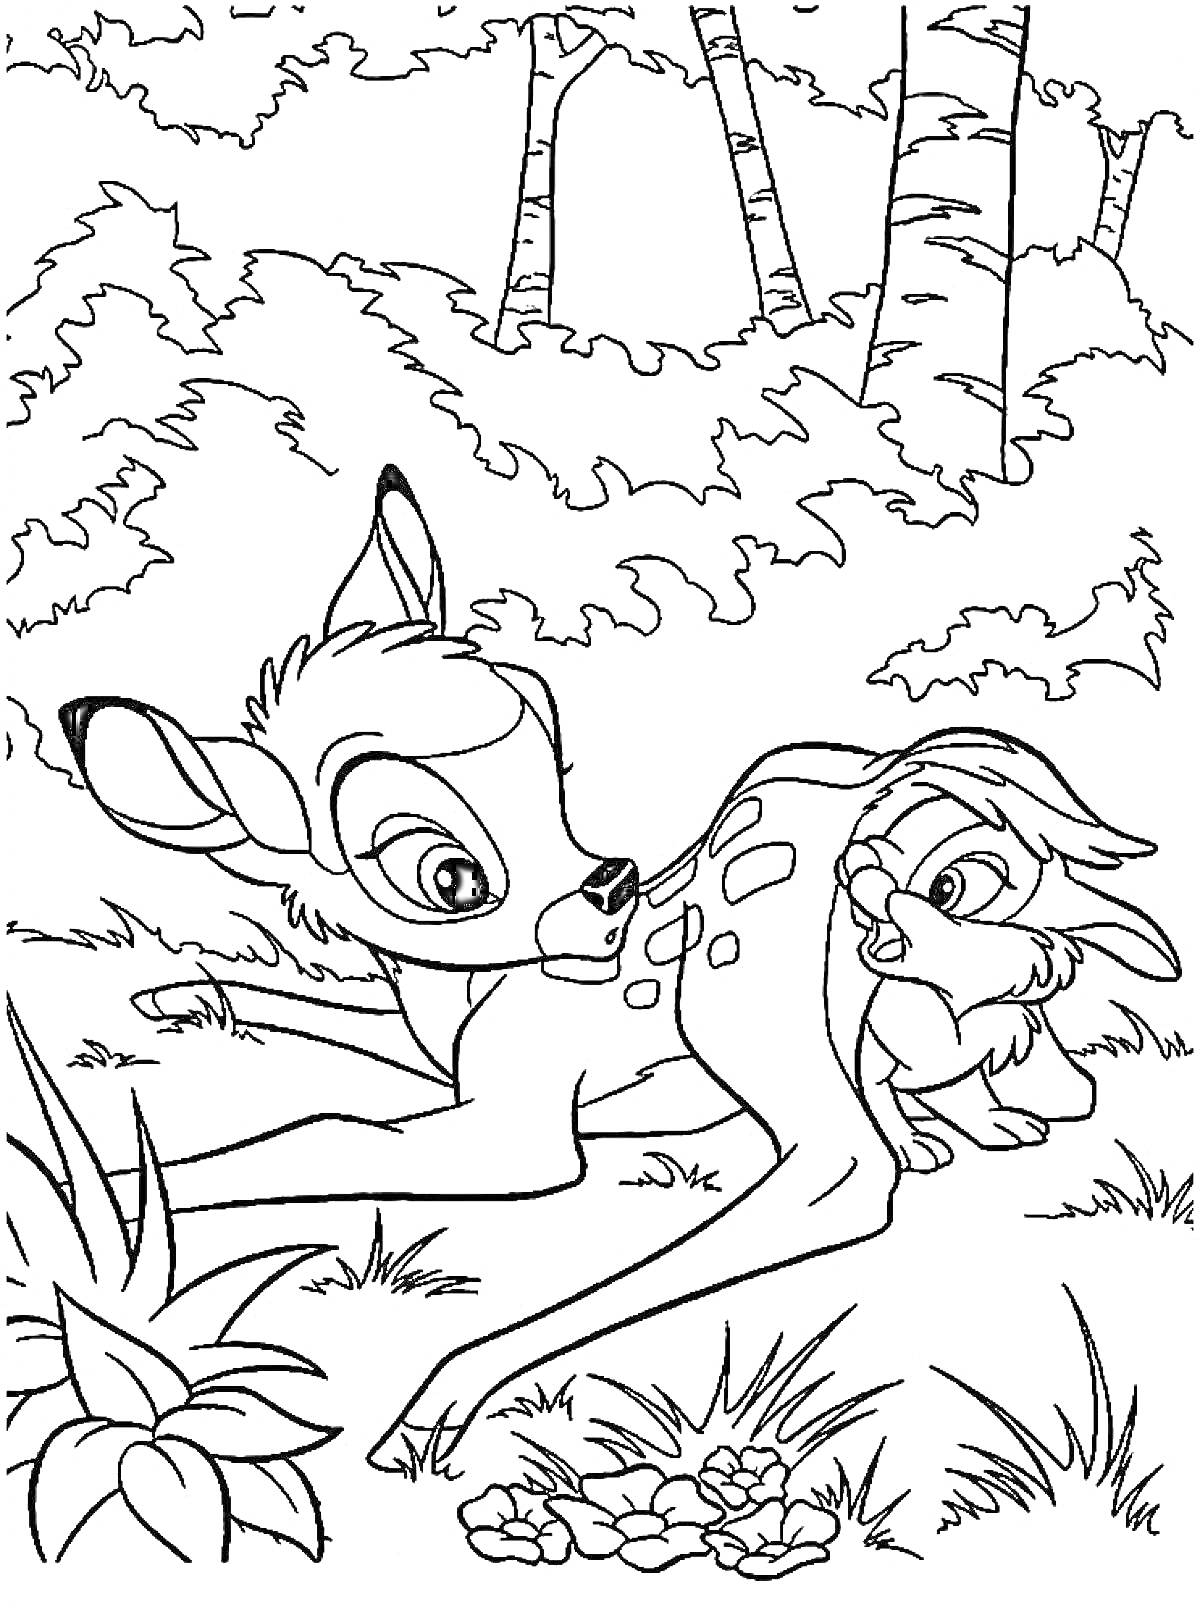 Раскраска Бэмби и кролик на лесной поляне с растениями и деревьями на заднем плане